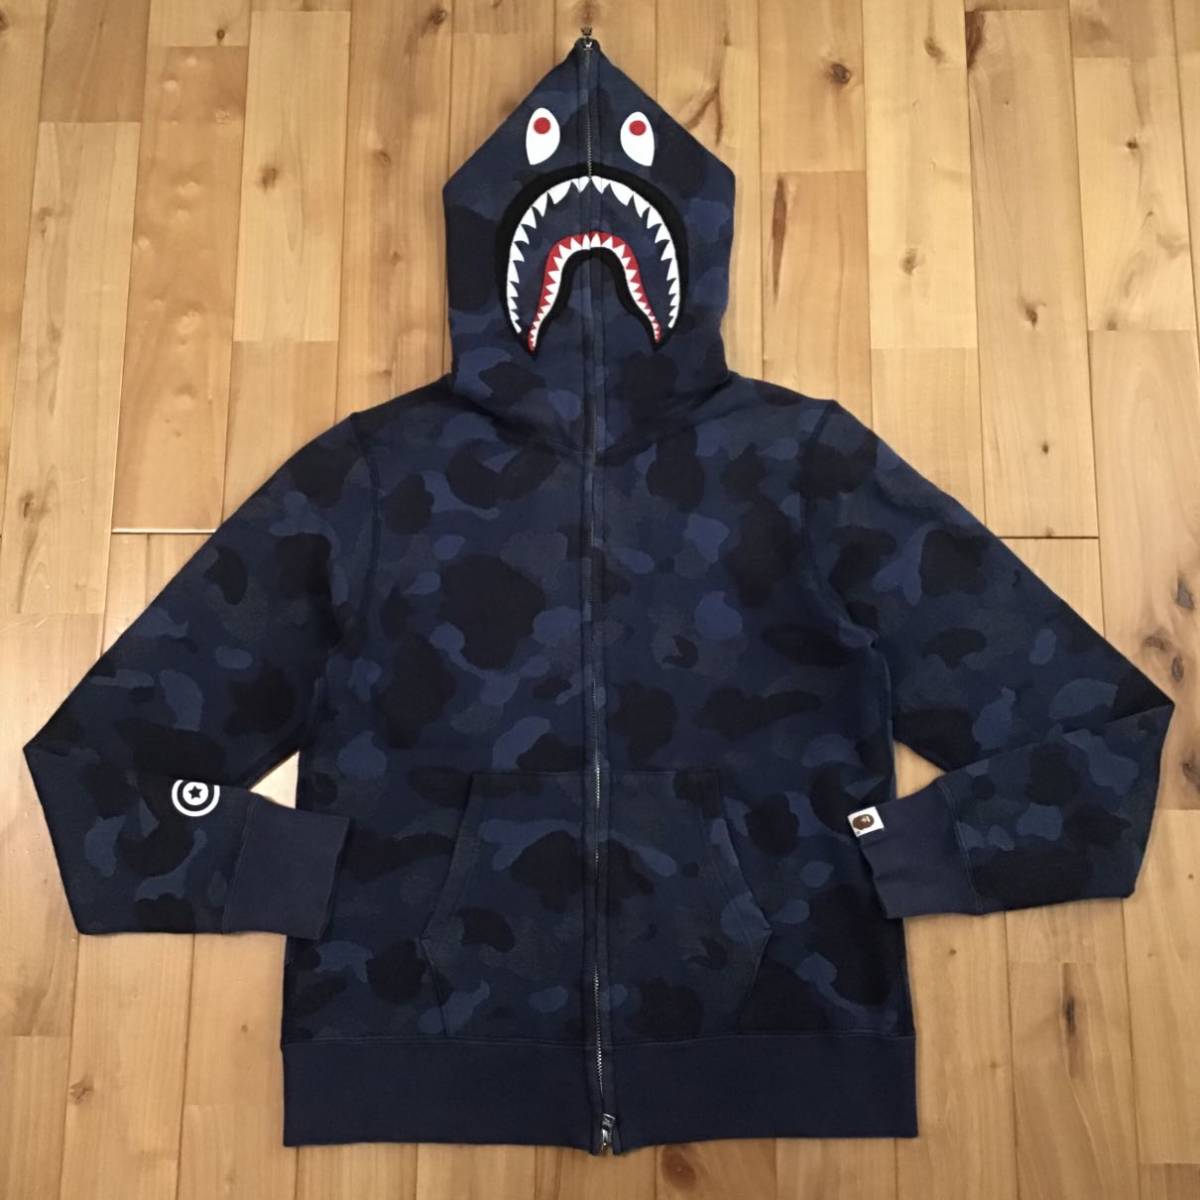 ジャガードカモ シャーク パーカー Sサイズ Jacquard shark full zip hoodie a bathing ape BAPE blue camo エイプ ベイプ 迷彩 z0075